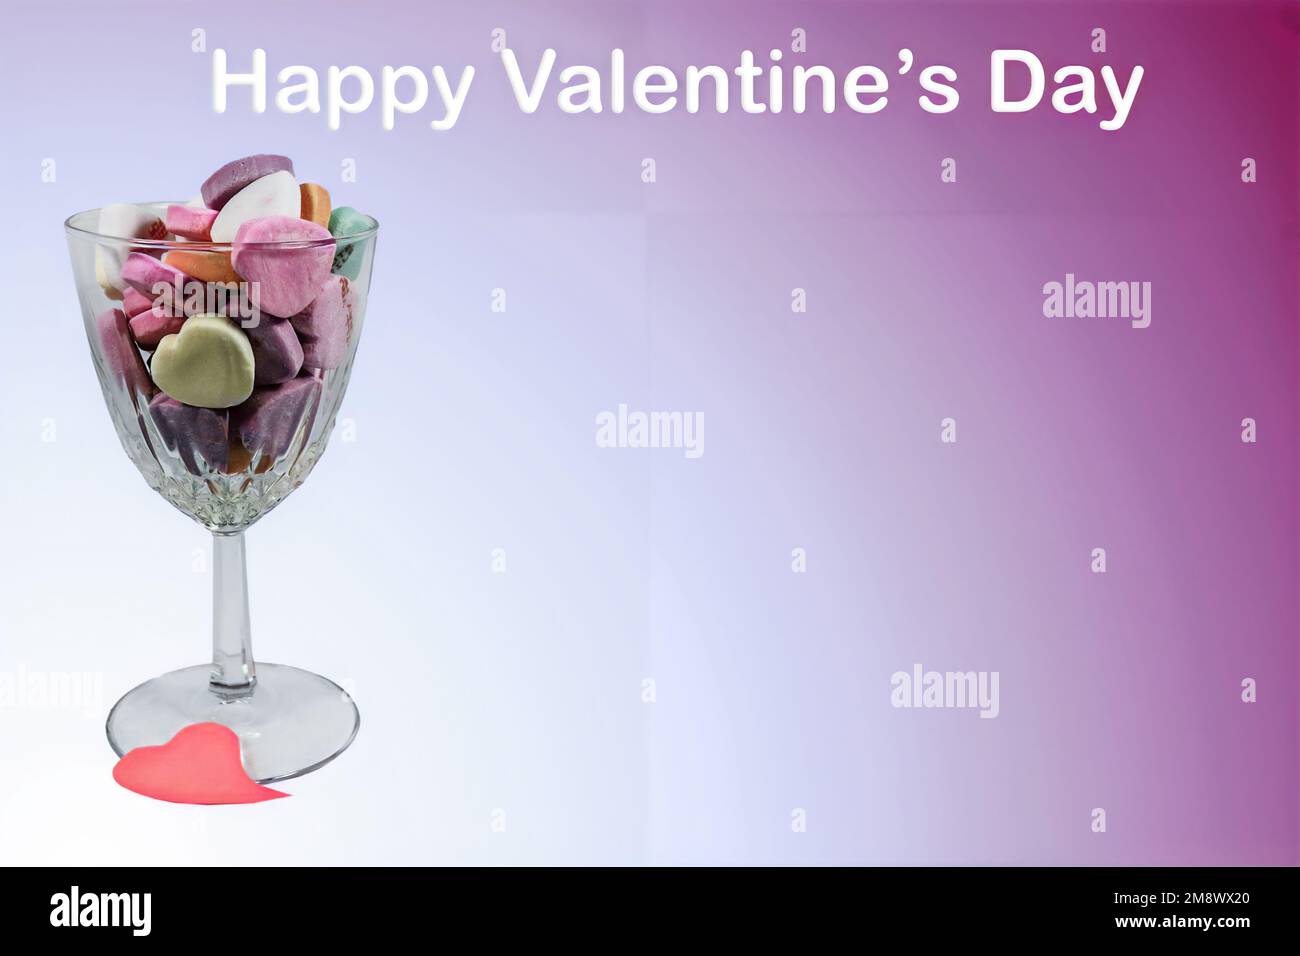 Verre de vin de cristal tenant coeur de Saint-Valentin bonbon isolé sur dégradé blanc à violet fond avec des mots Happy Valentines Day - il suffit d'ajouter du texte - roo Banque D'Images